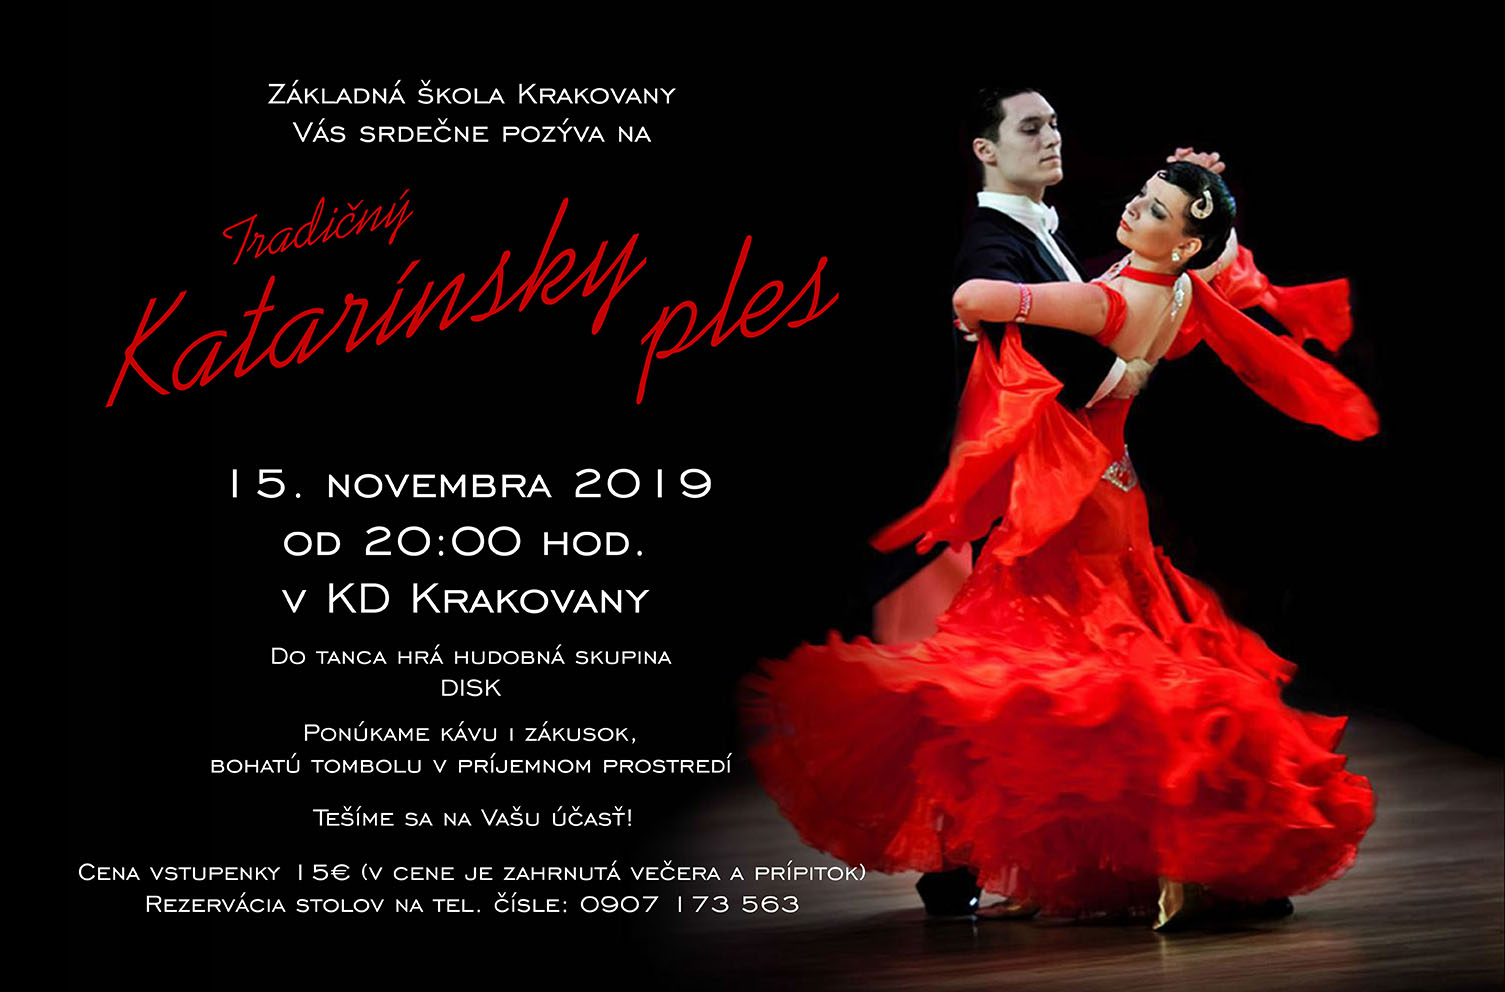 Tradin Katarnsky ples Krakovany 2019